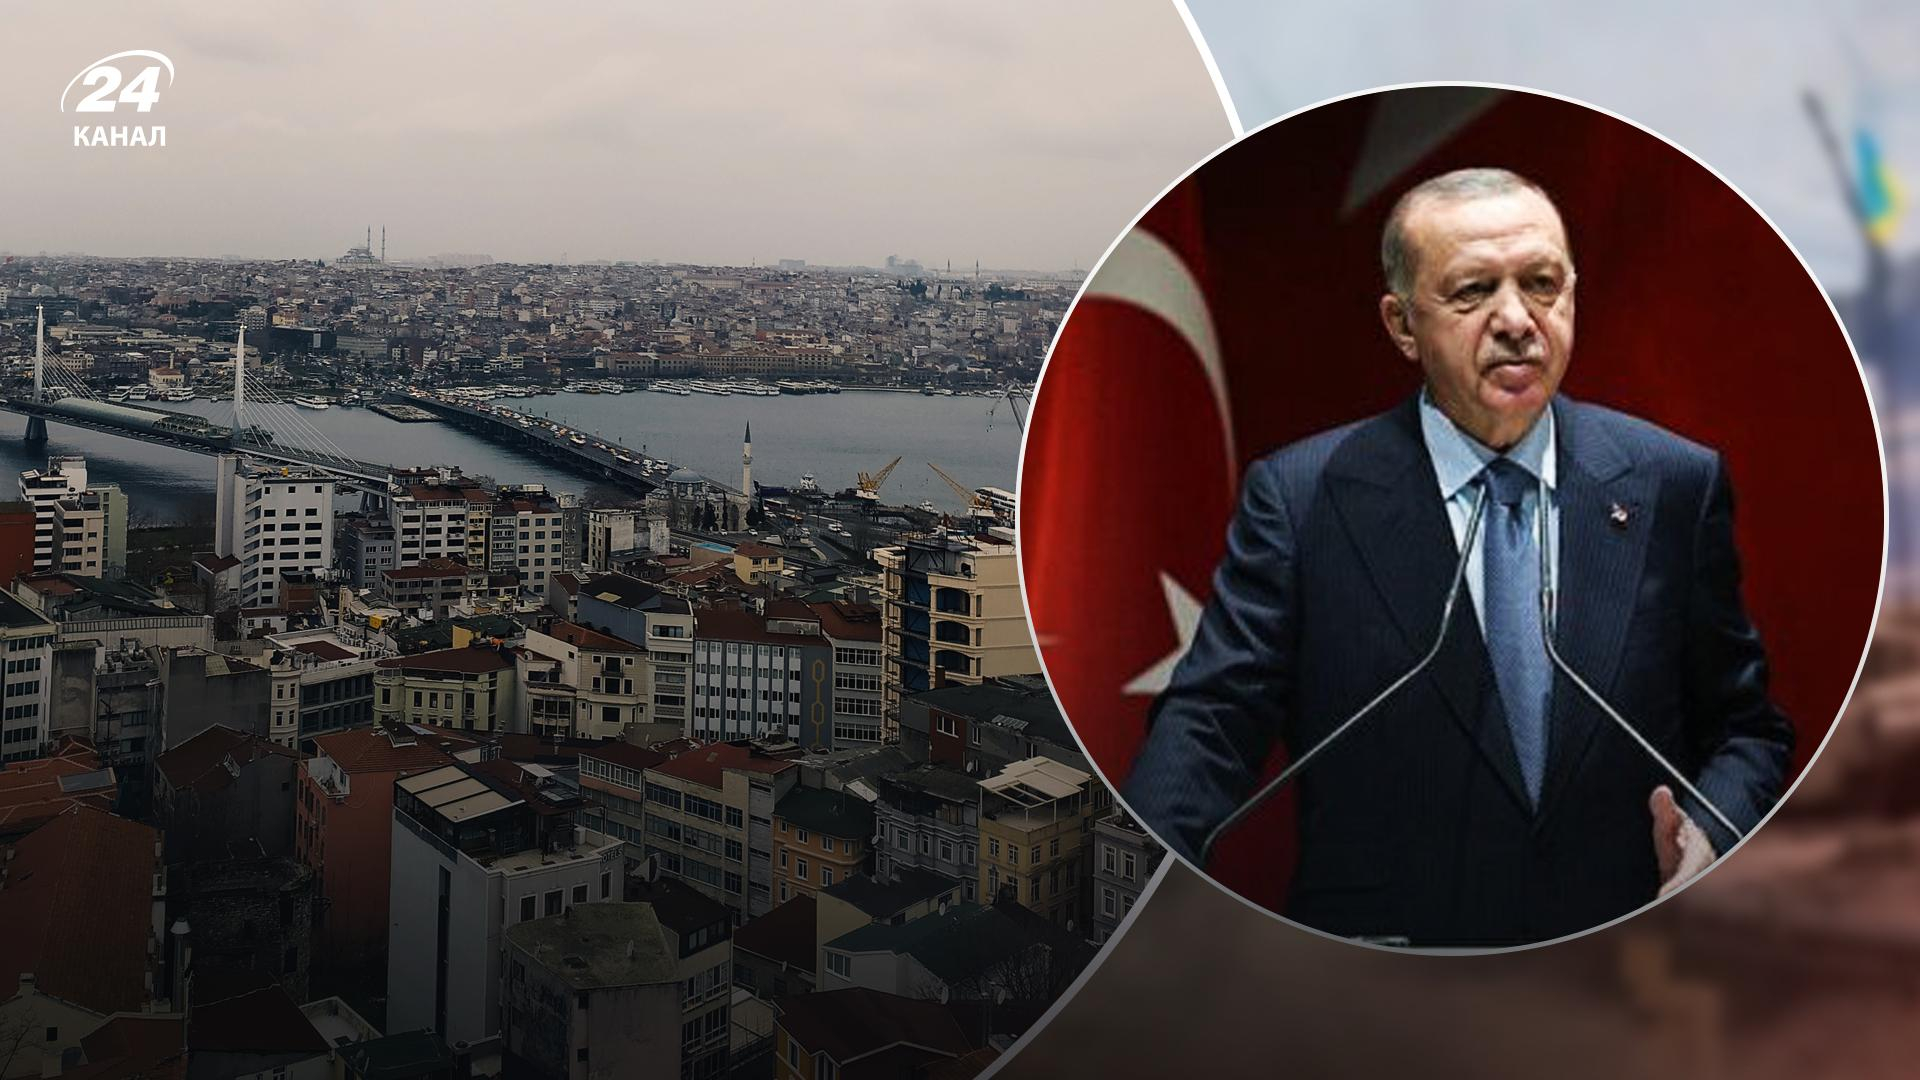 Эрдоган анонсировал самый масштабный проект социального жилья в истории Турции - Недвижимость